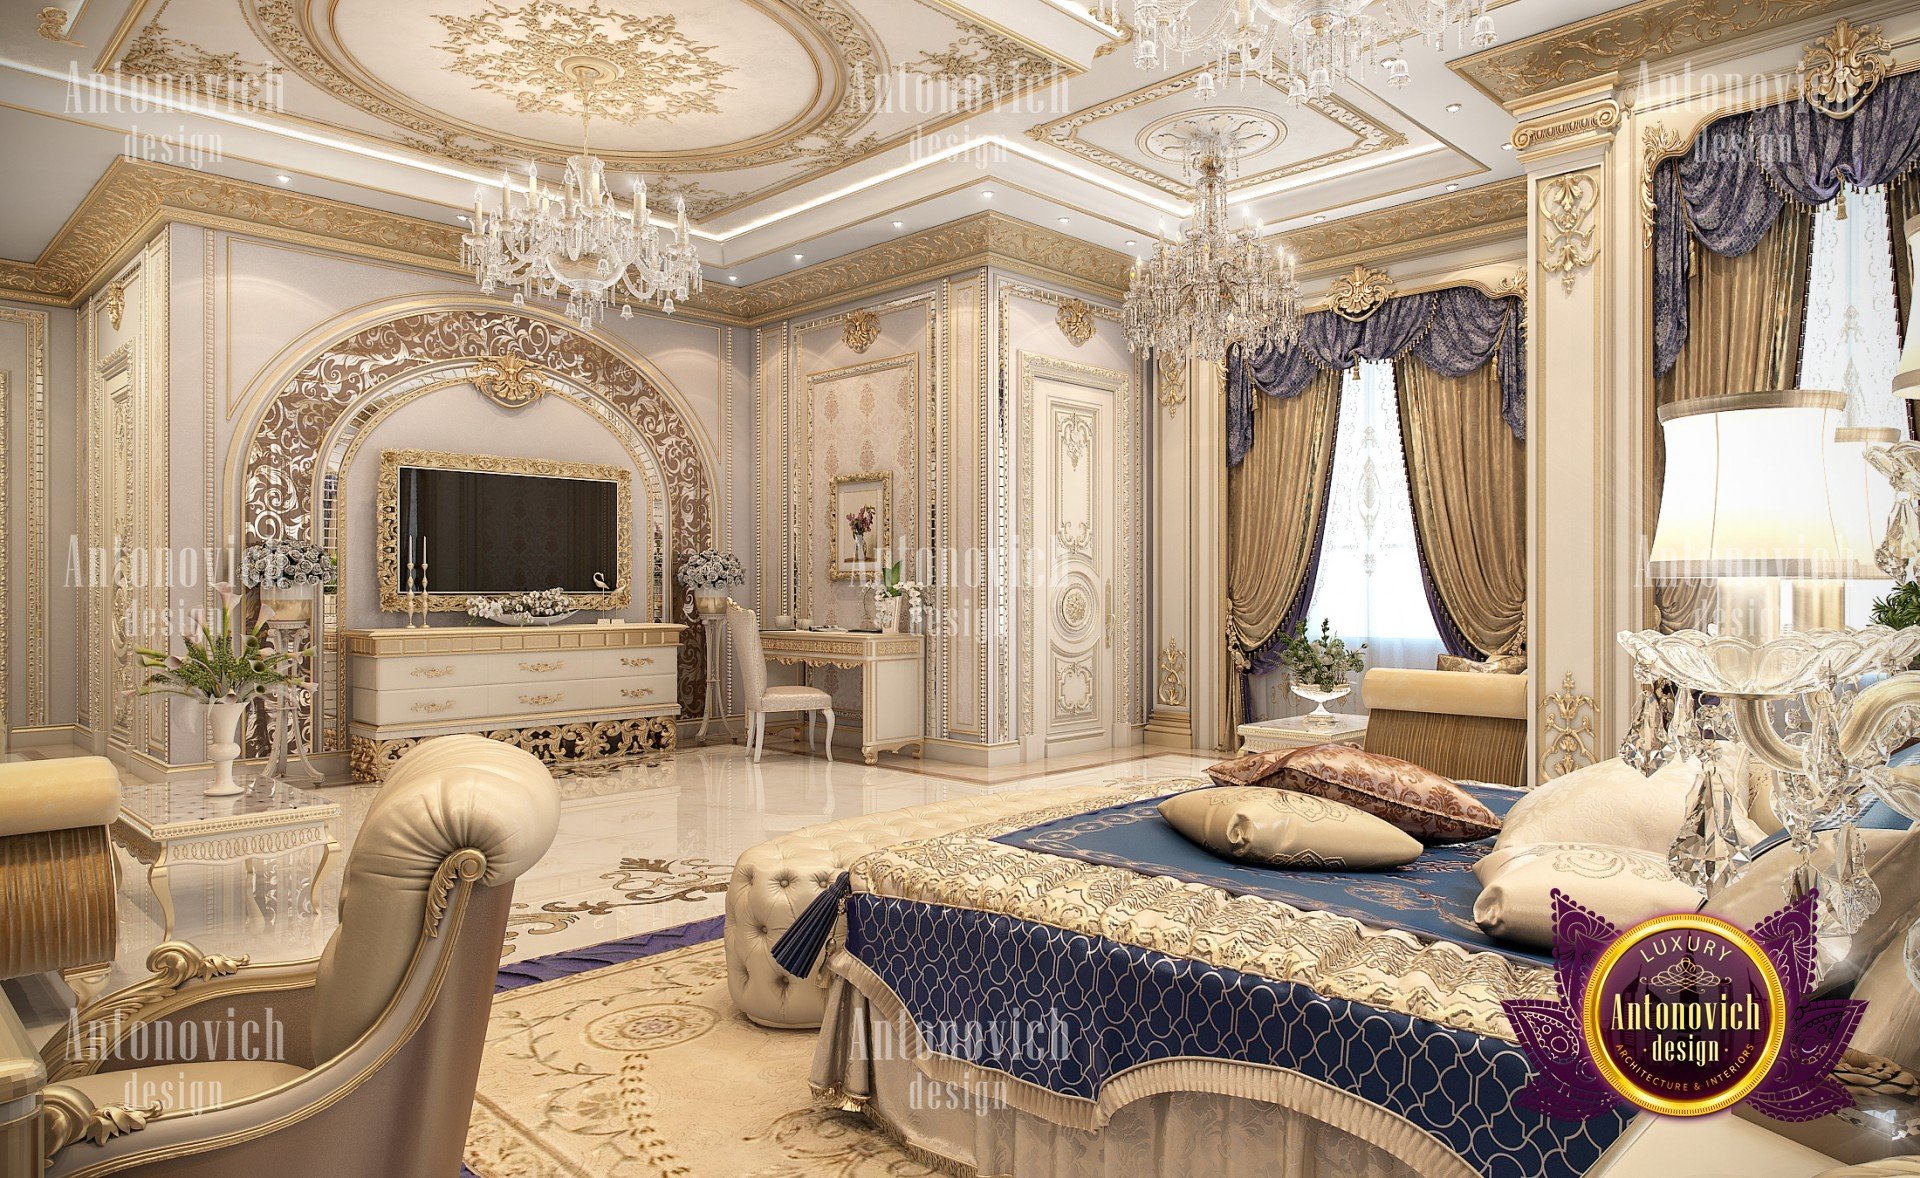 Elegant Bedroom interior design by Luxury Antonovich Desig